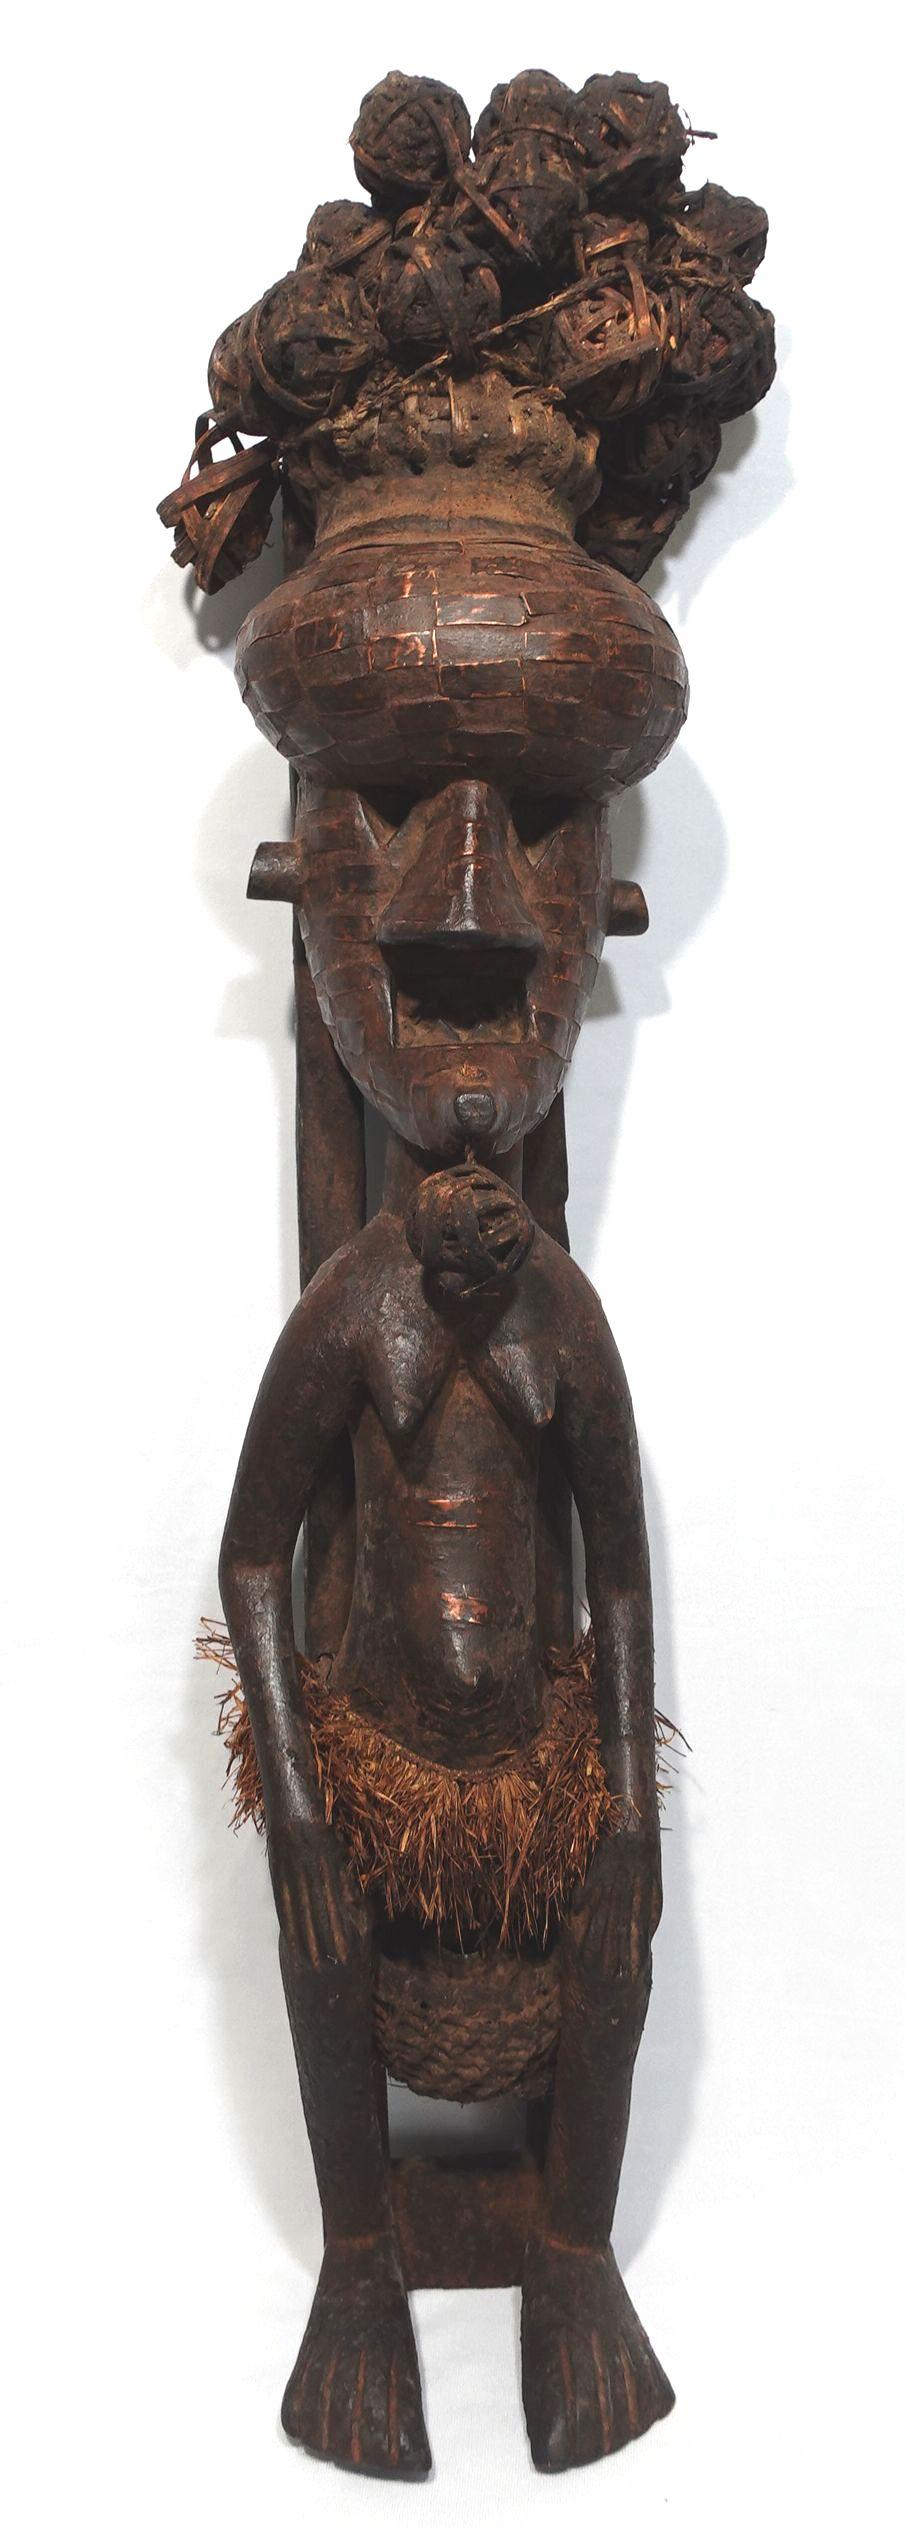 Statue précieuse d'art africain avec des boules de four en guise de cheveux, une texture en tressage de panier sur le visage et un pagne. Les panneaux en laiton sont appliqués sur l'ensemble de la tête et du visage et sur une partie du corps. La